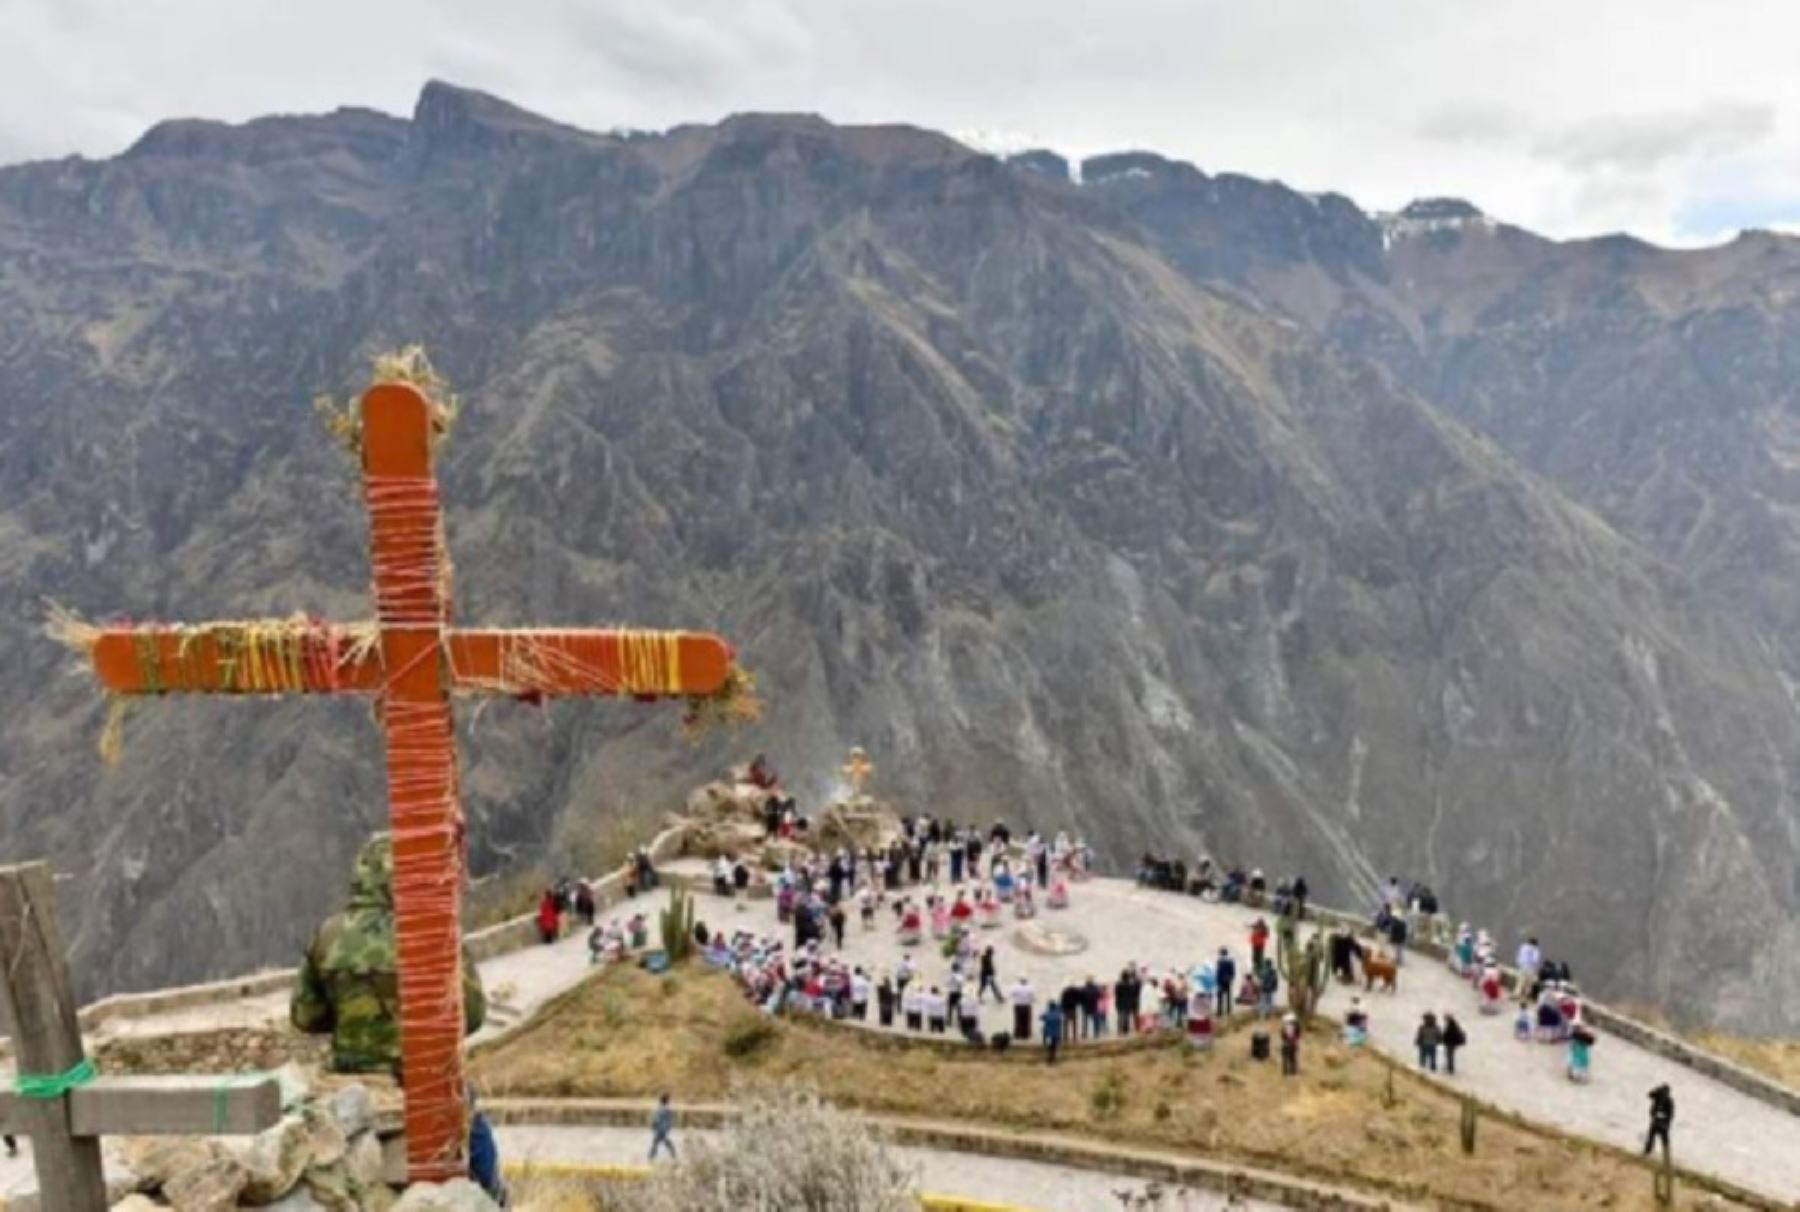 En lo que va del año el valle del Colca, ubicado en la región Arequipa, recibió 15,501 turistas entre nacionales y extranjeros, registrándose en marzo el mayor número de visitantes, informó la Autoridad Autónoma del Colca. ANDINA/Difusión